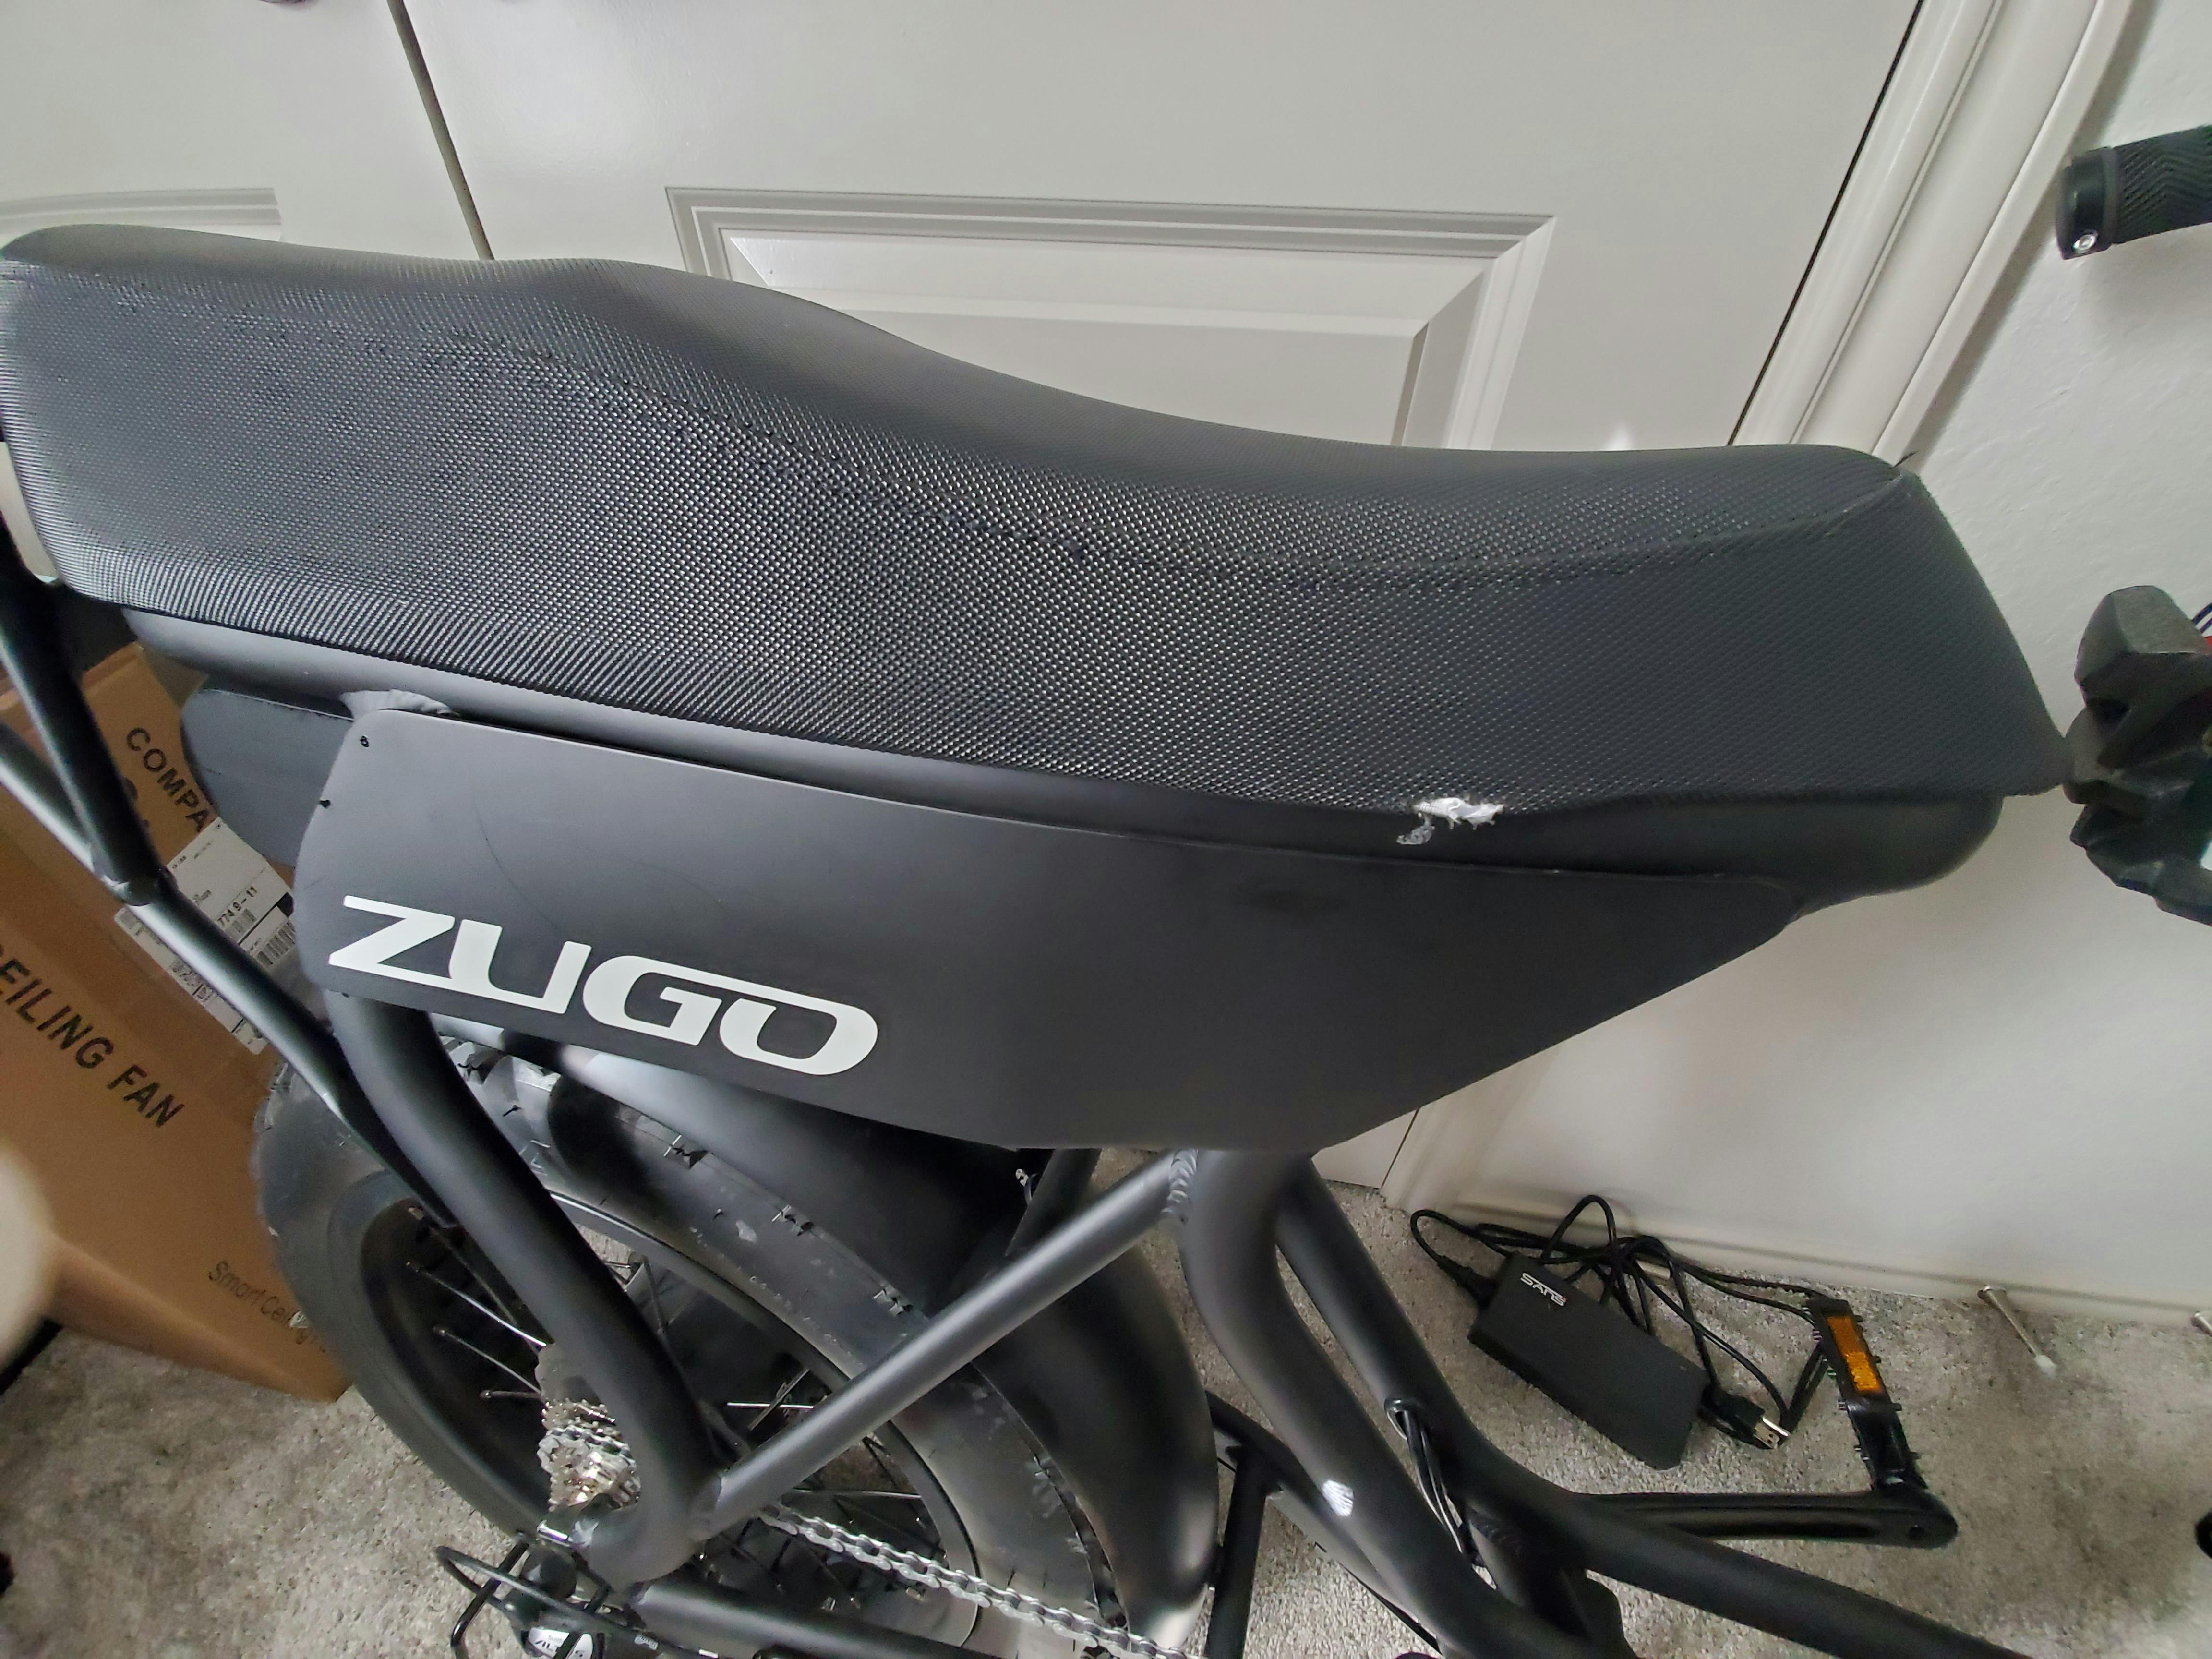 zugo electric bike review